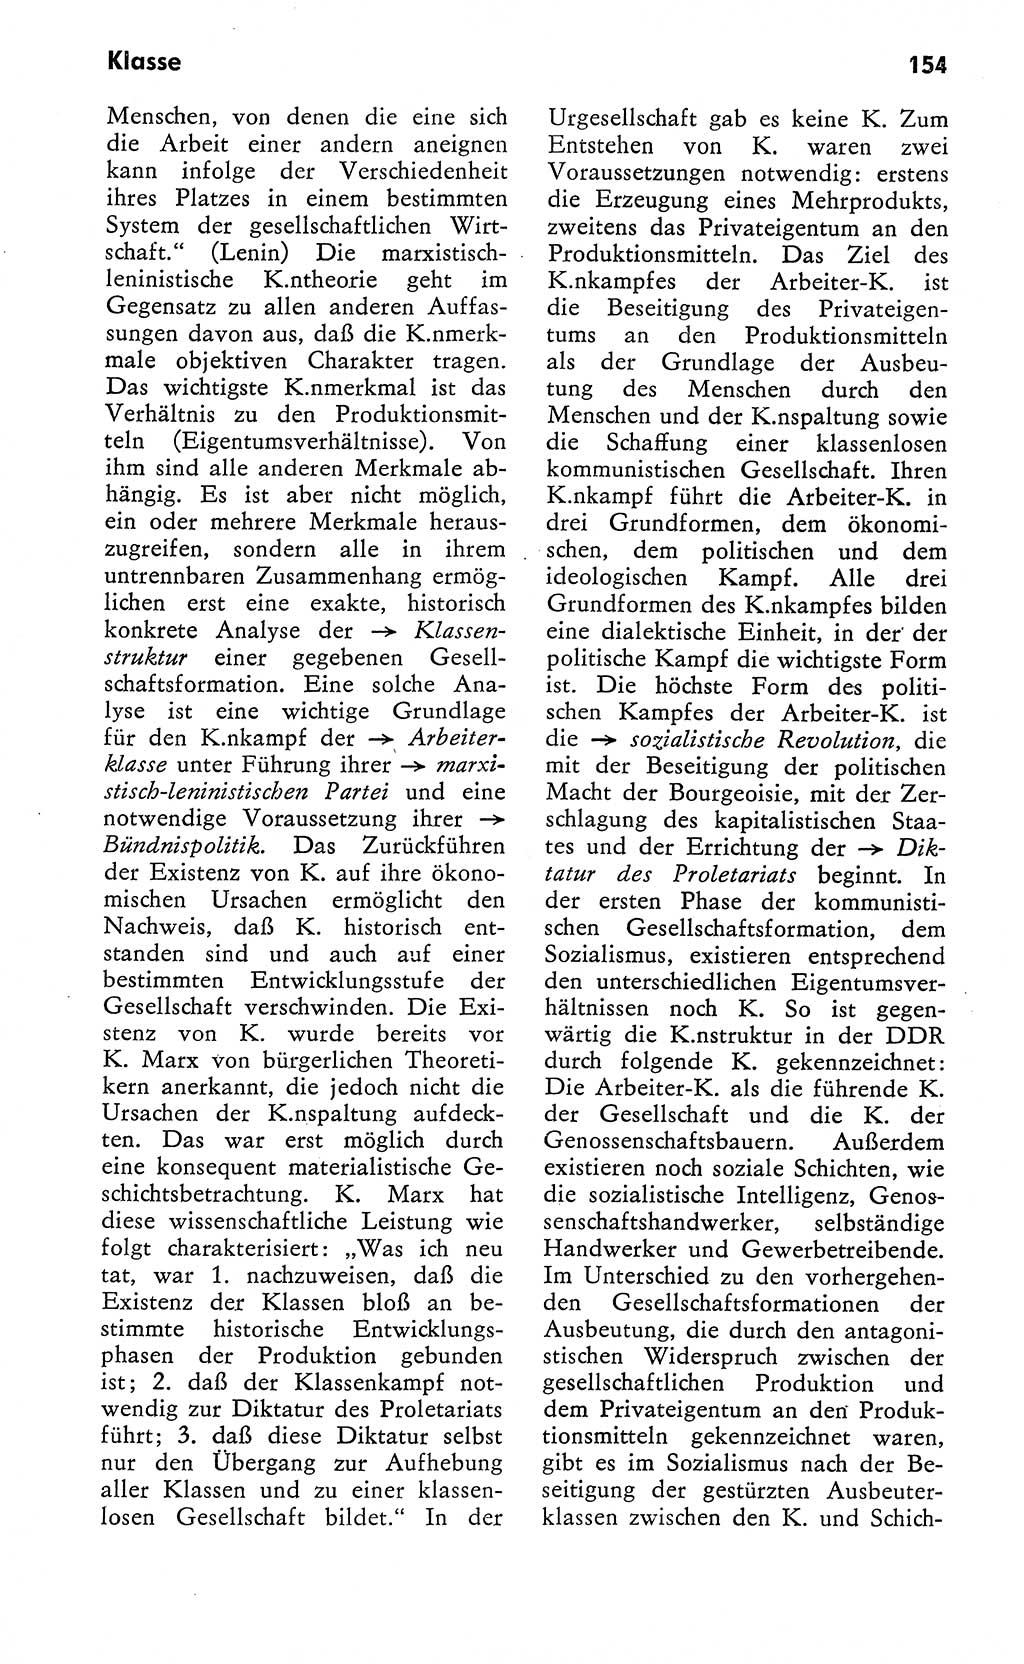 Wörterbuch zum sozialistischen Staat [Deutsche Demokratische Republik (DDR)] 1974, Seite 154 (Wb. soz. St. DDR 1974, S. 154)